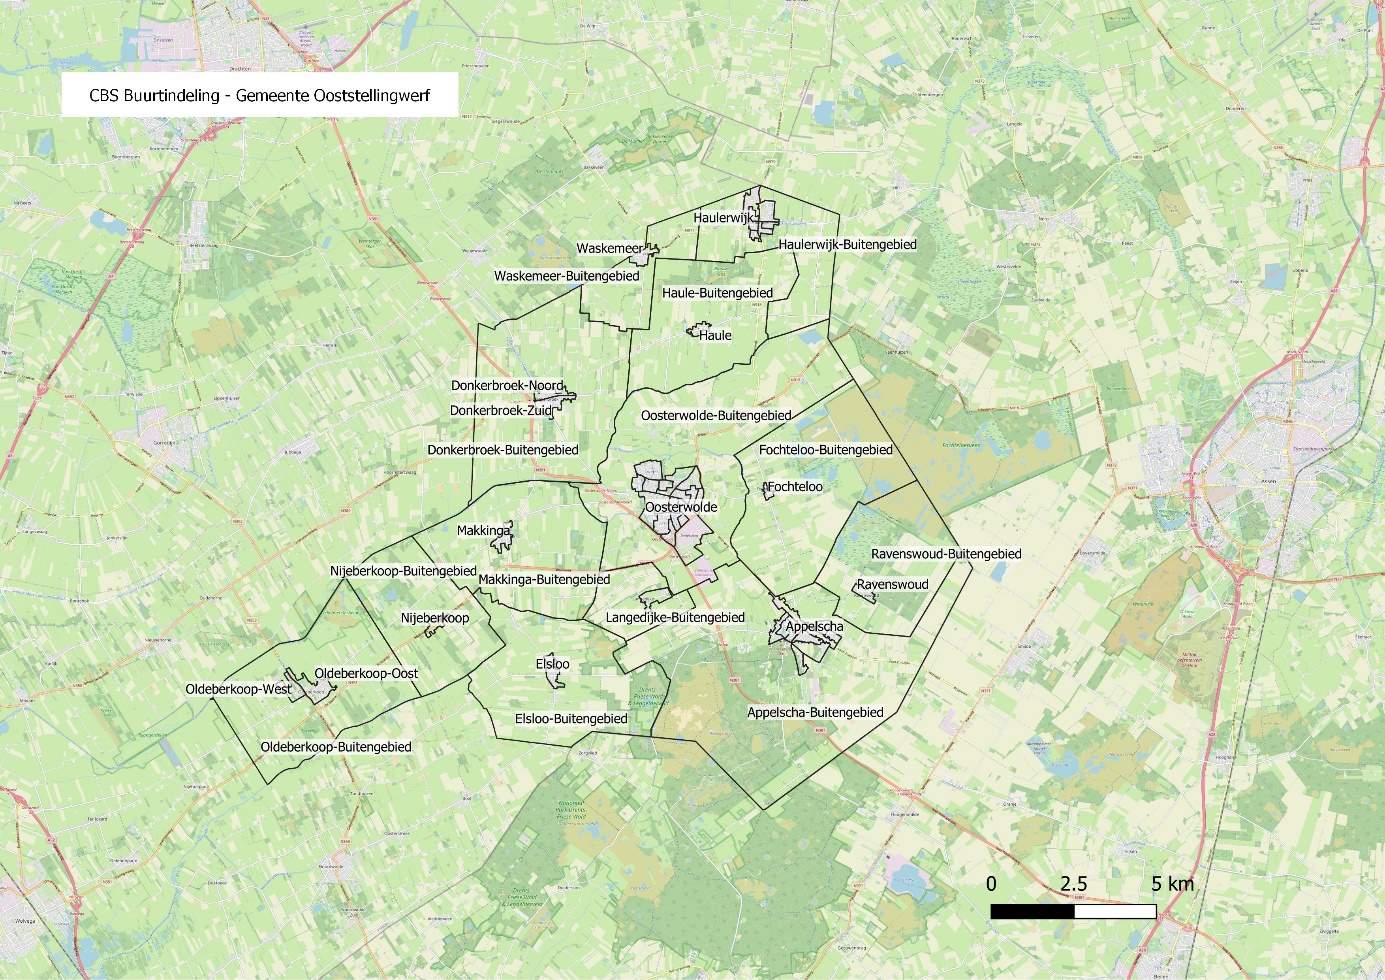 CBS-buurtindeling van de gemeente Ooststellingwerf. Voor de buurtindeling van Oosterwolde, Appelscha en Haulerwijk zijn specifieke kaarten opgenomen.